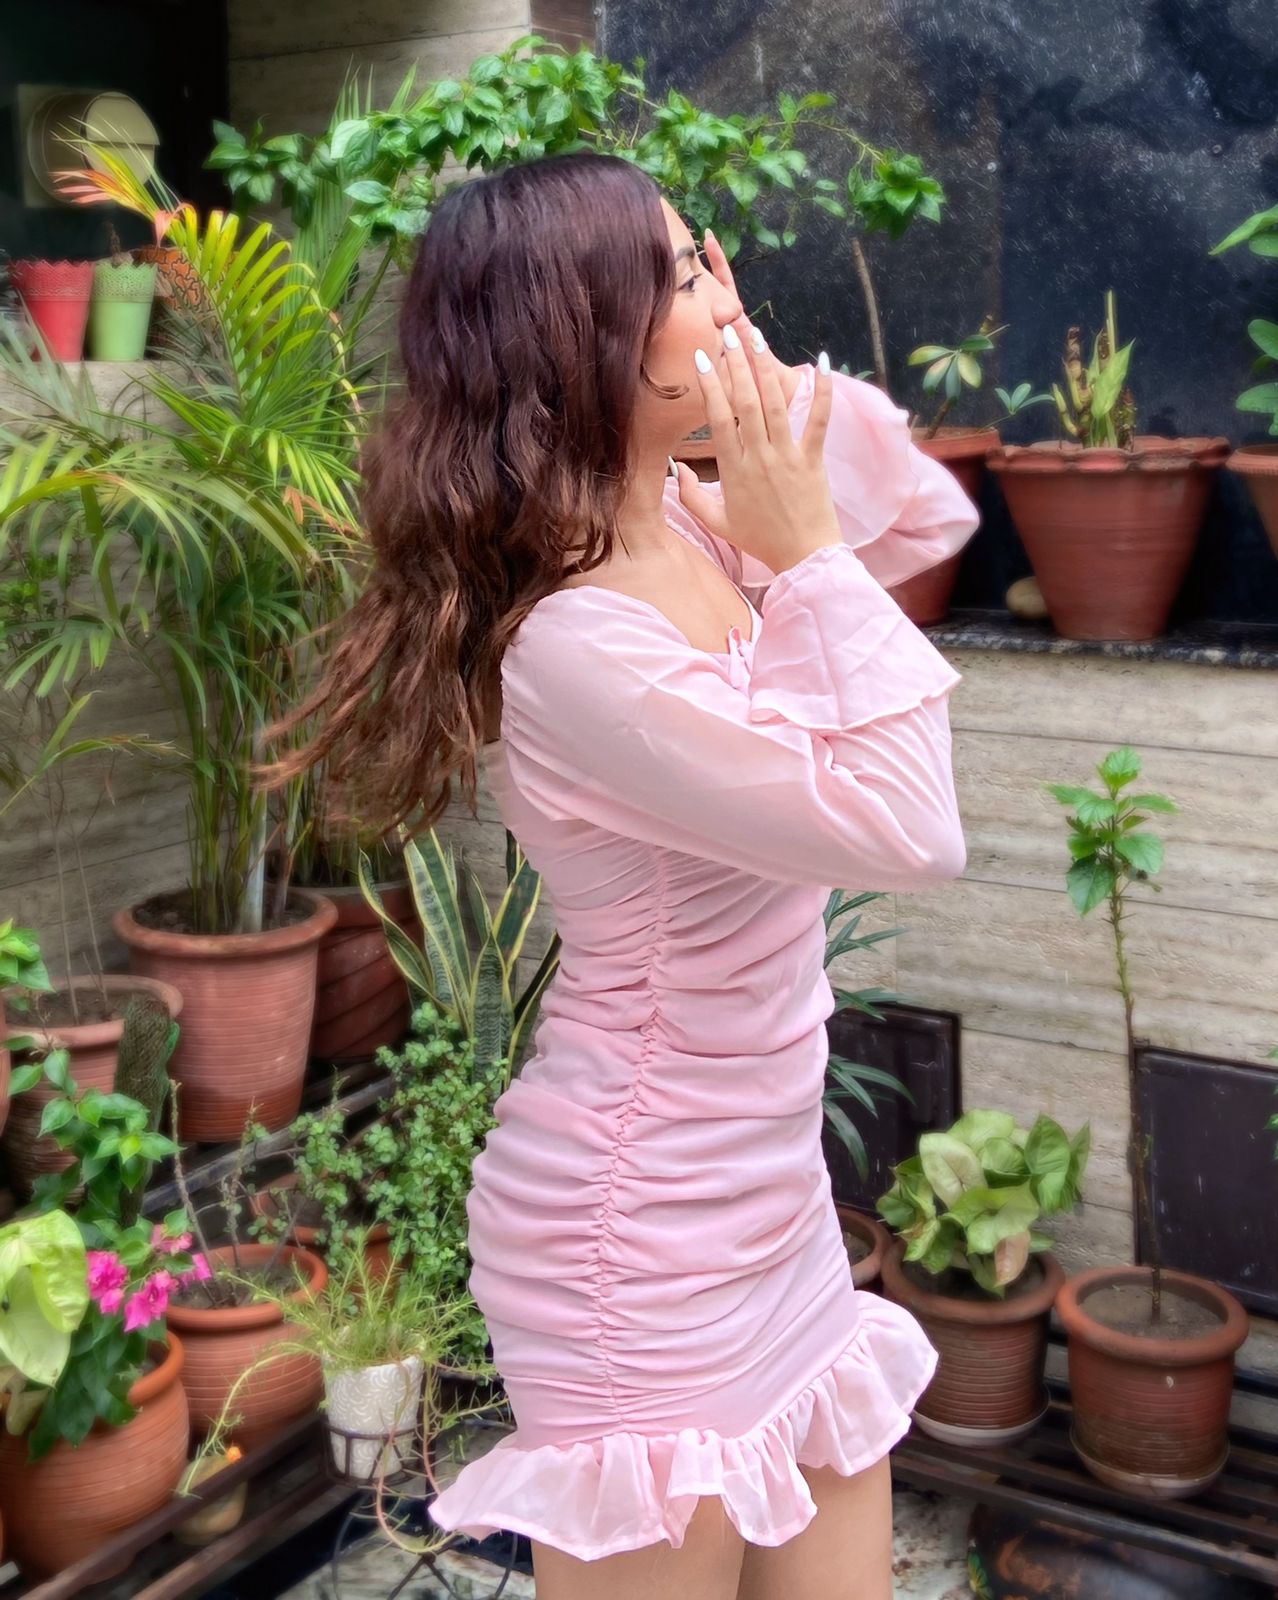 Feeling cute pink dress - Emprall 